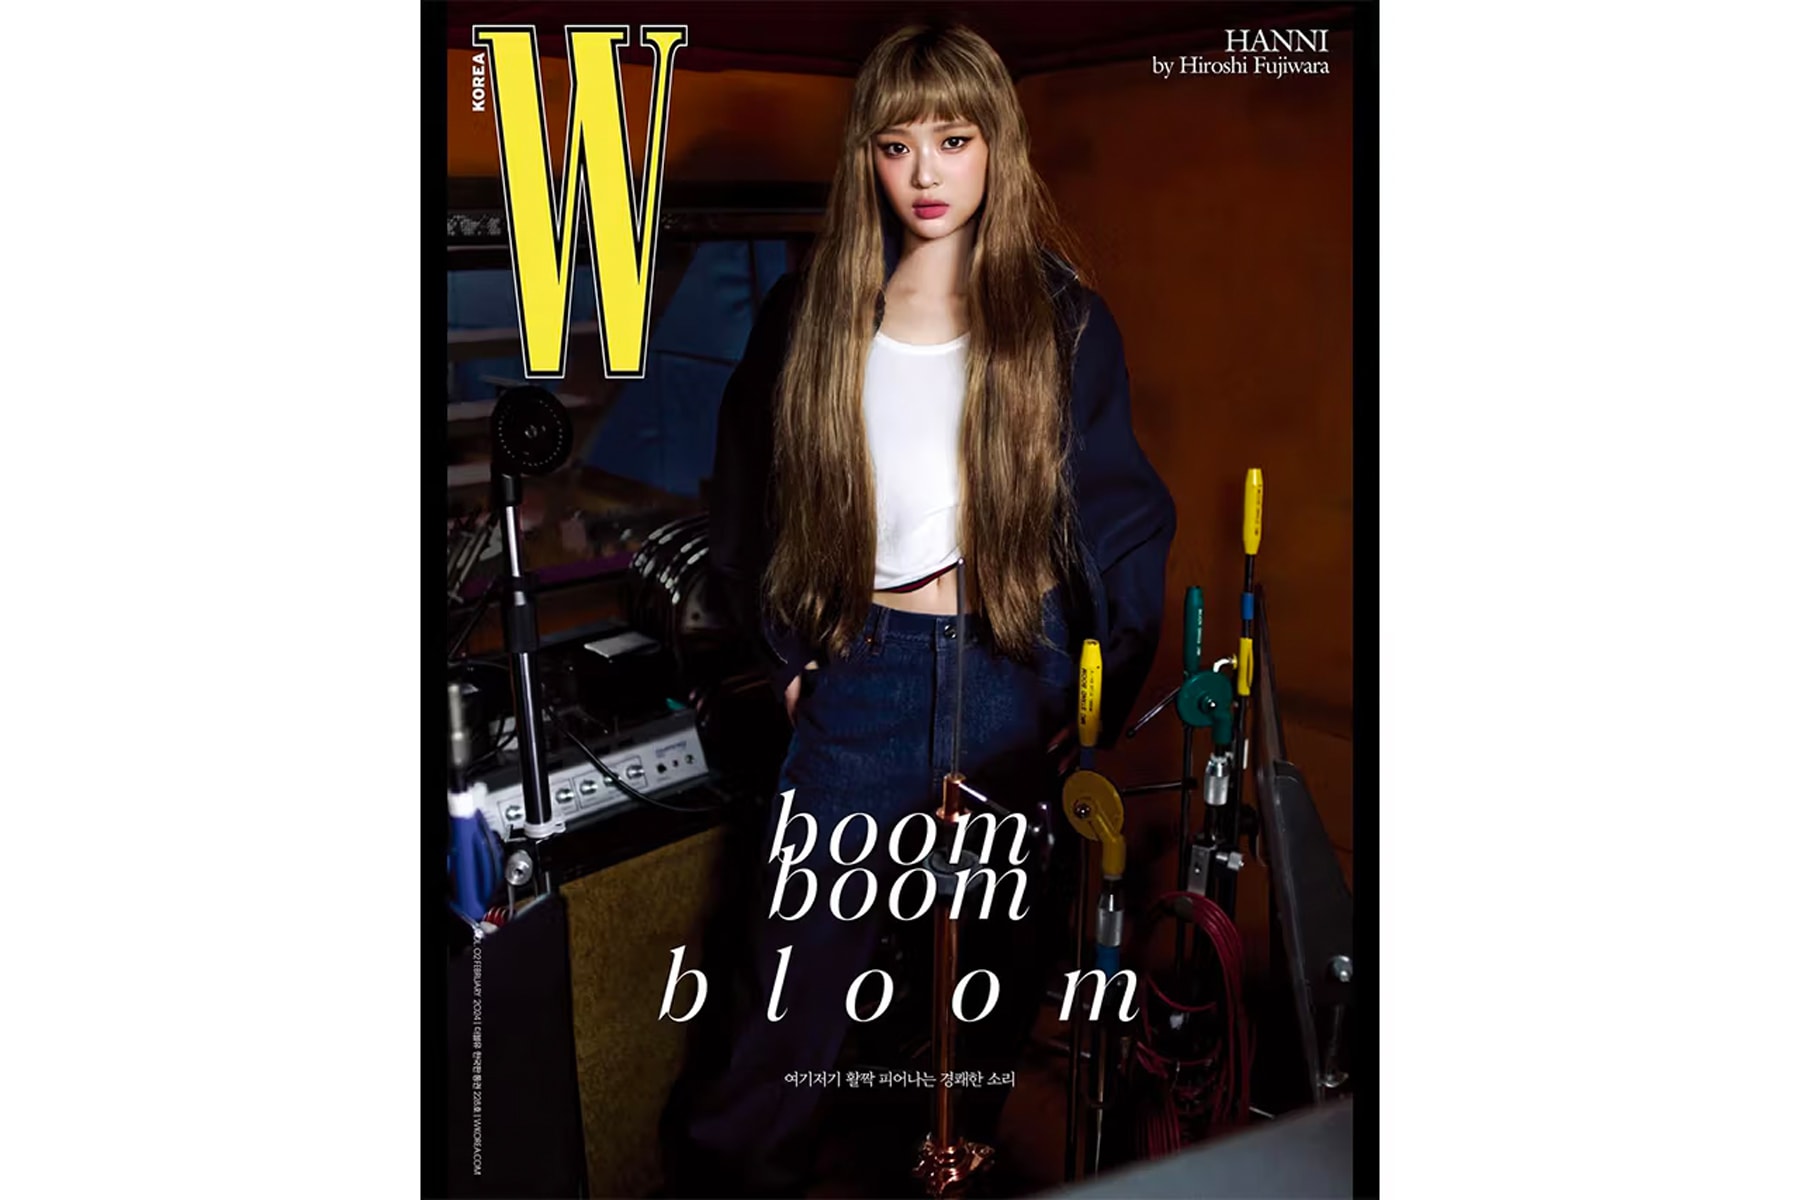 藤原浩為 NewJeans 成員 Hanni 拍攝《W Korea》雜誌封面